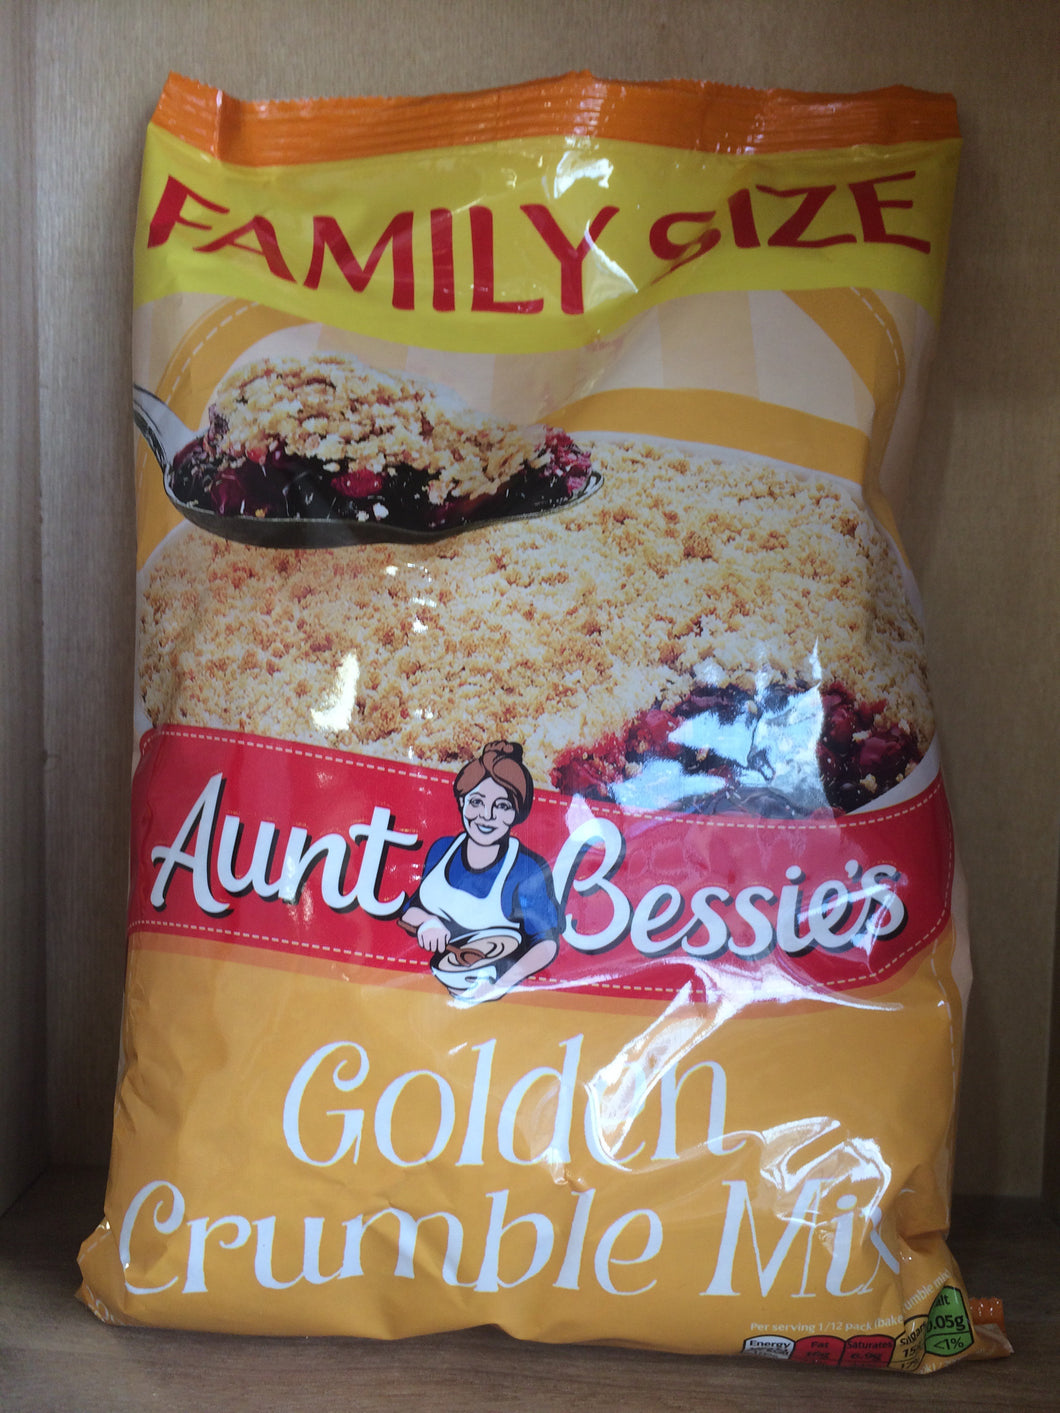 Aunt Bessie's Golden Crumble Mix 900g